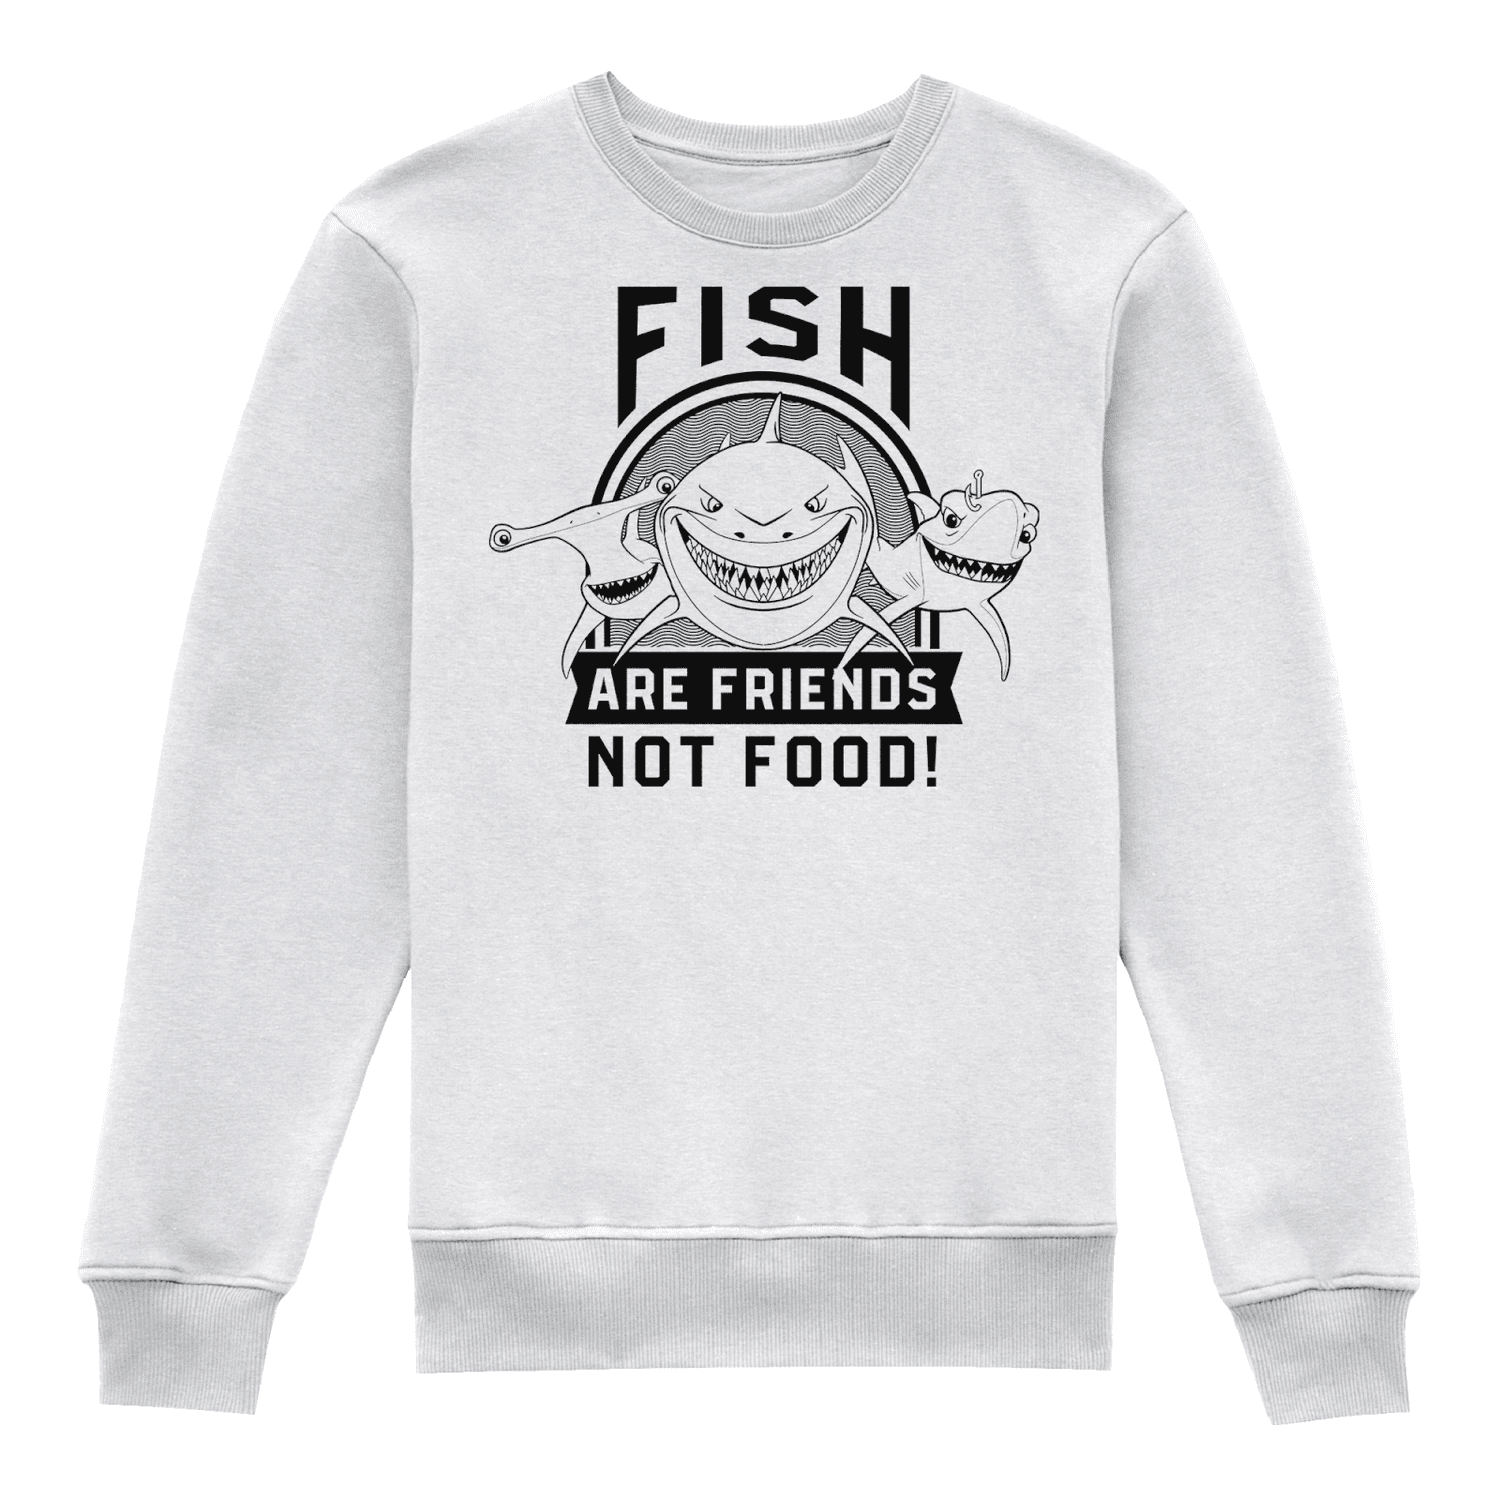 Finding Nemo Fish Are Friends Kids' Sweatshirt - White